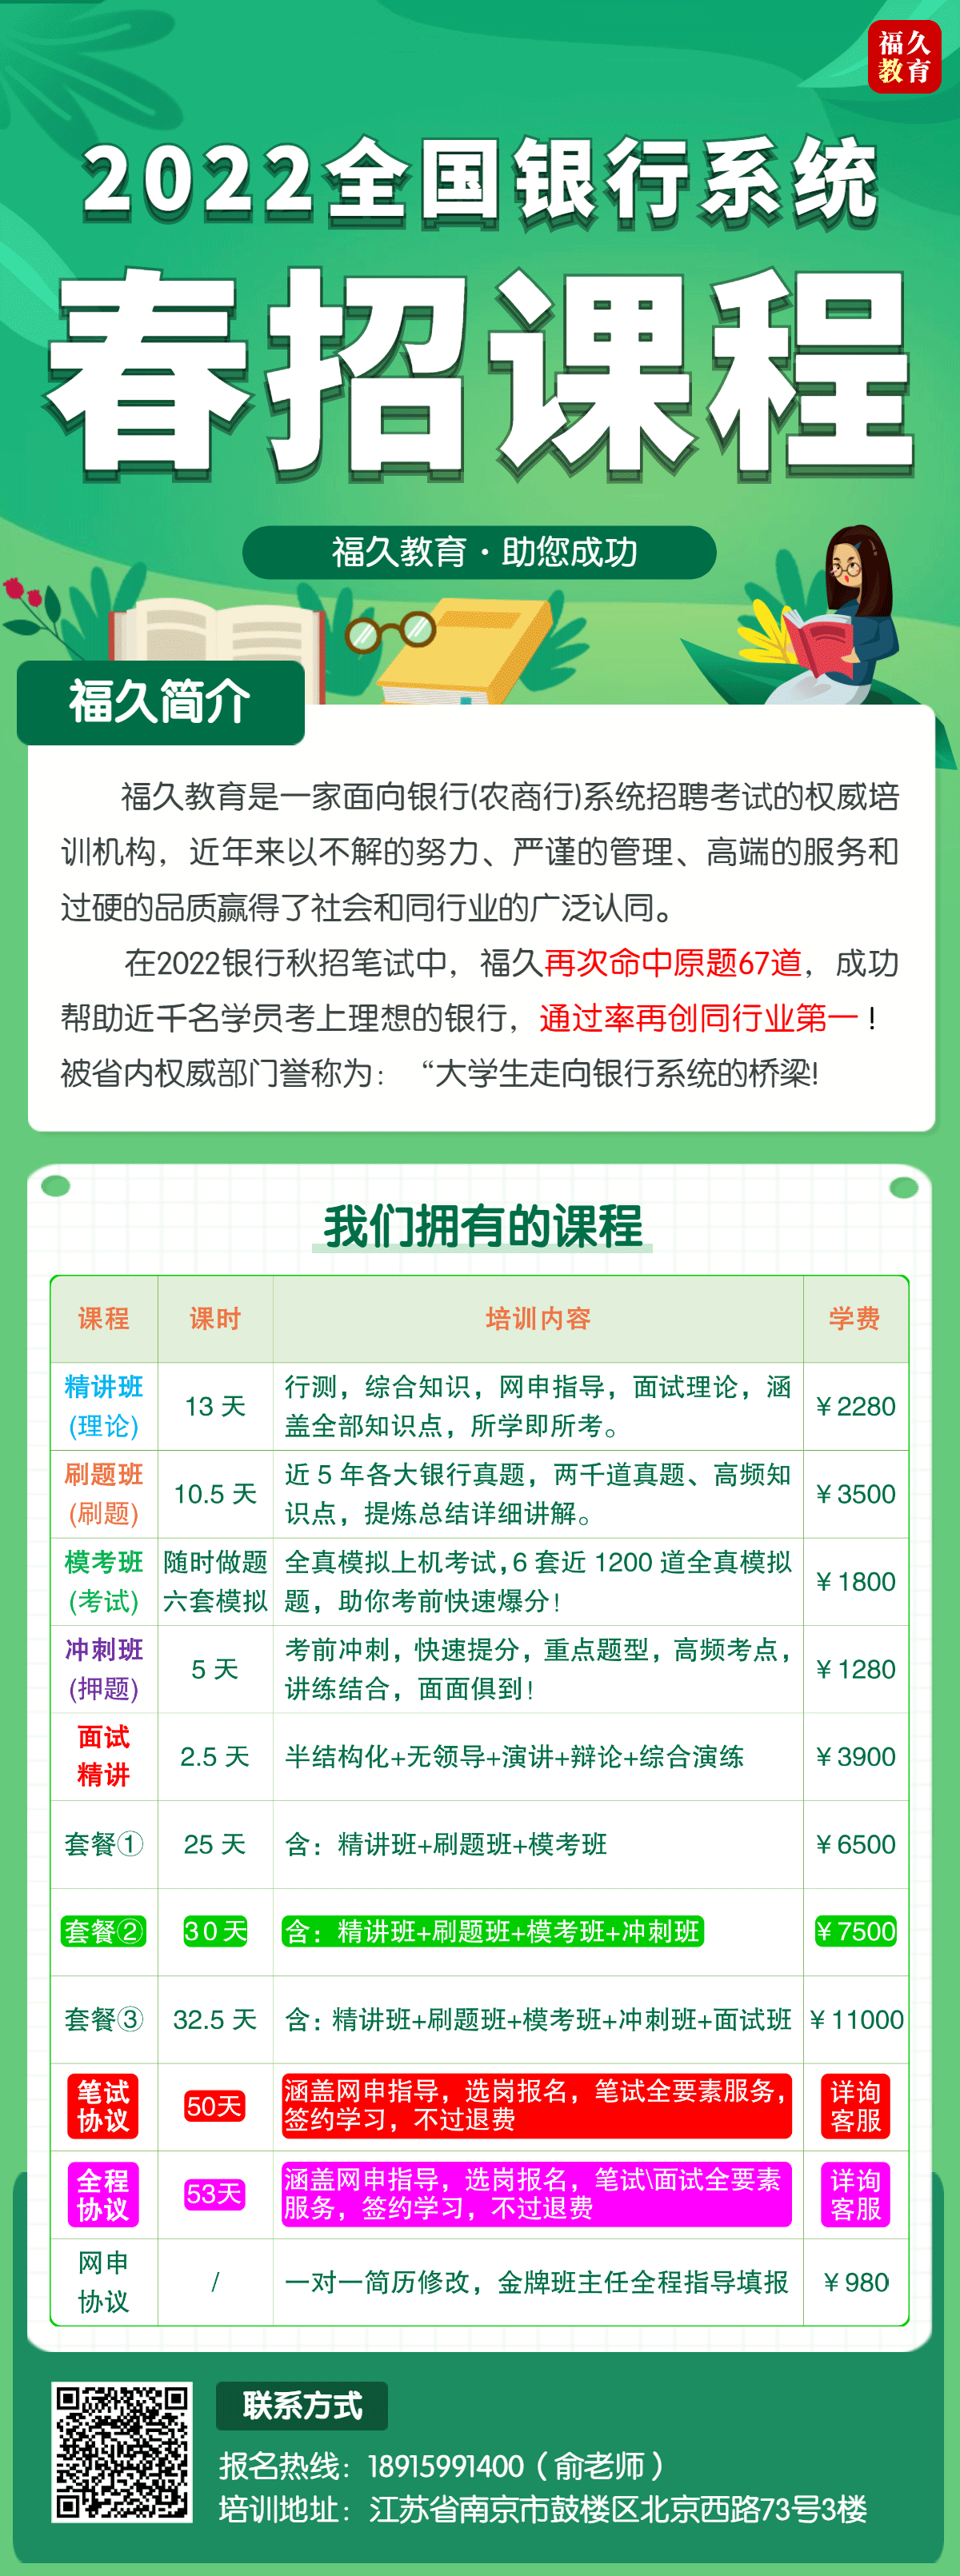 2022春招课程安排 (1).png